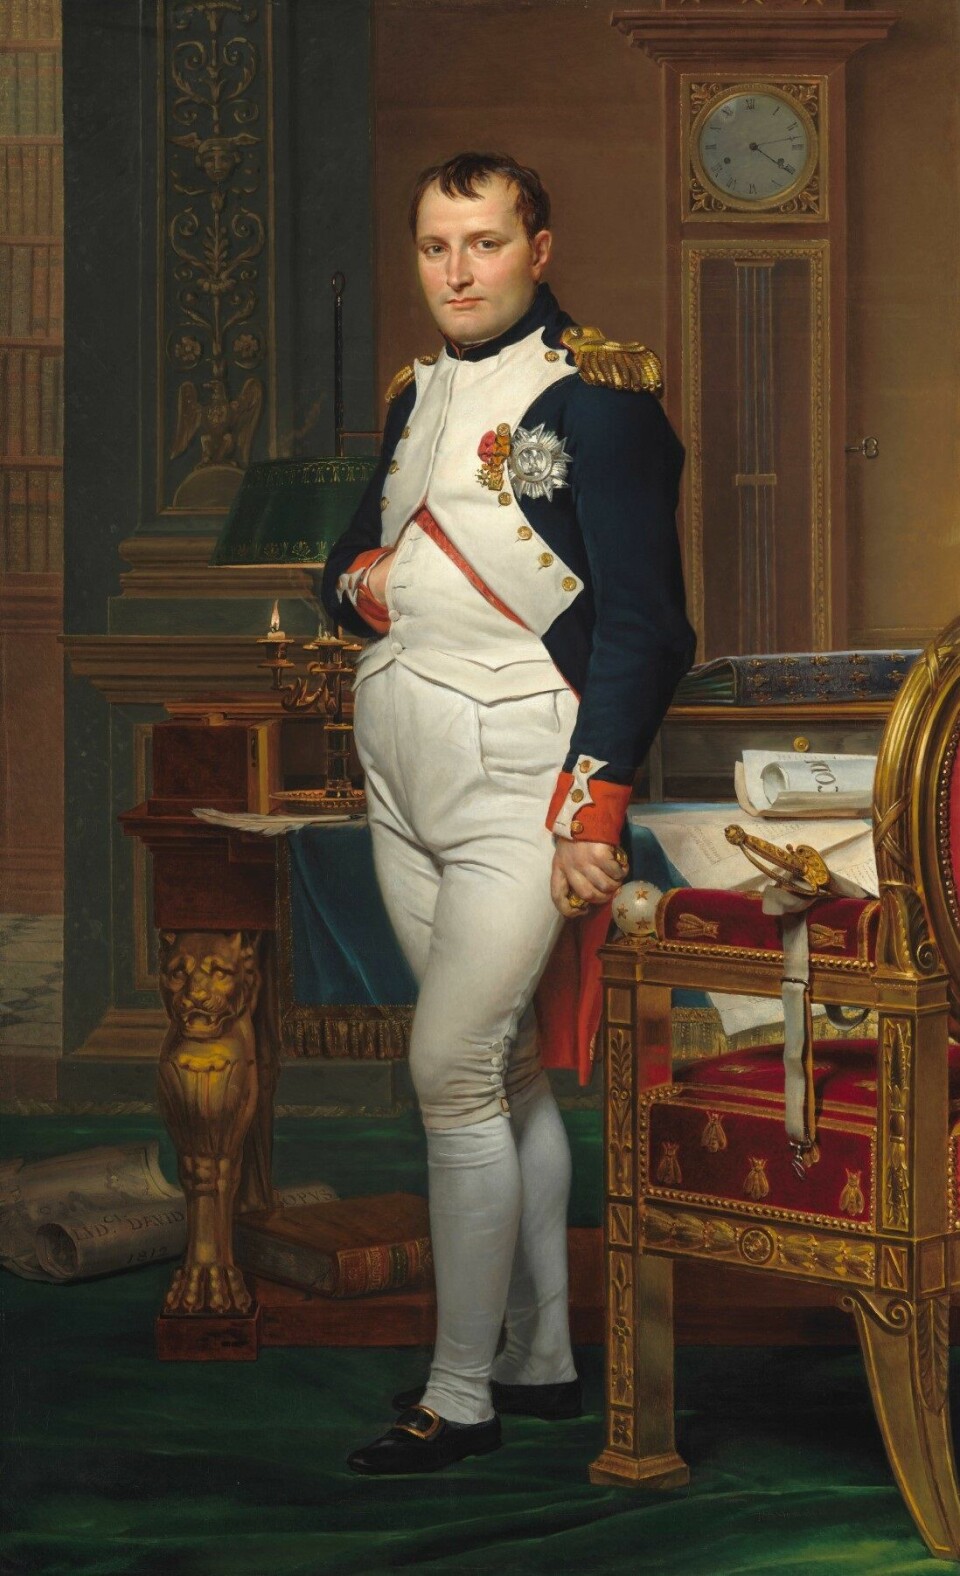 Napoleon med hånden innenfor vesten. Denne posituren var på moten på den tida, og ikke noe som var spesielt for Napoleon selv.